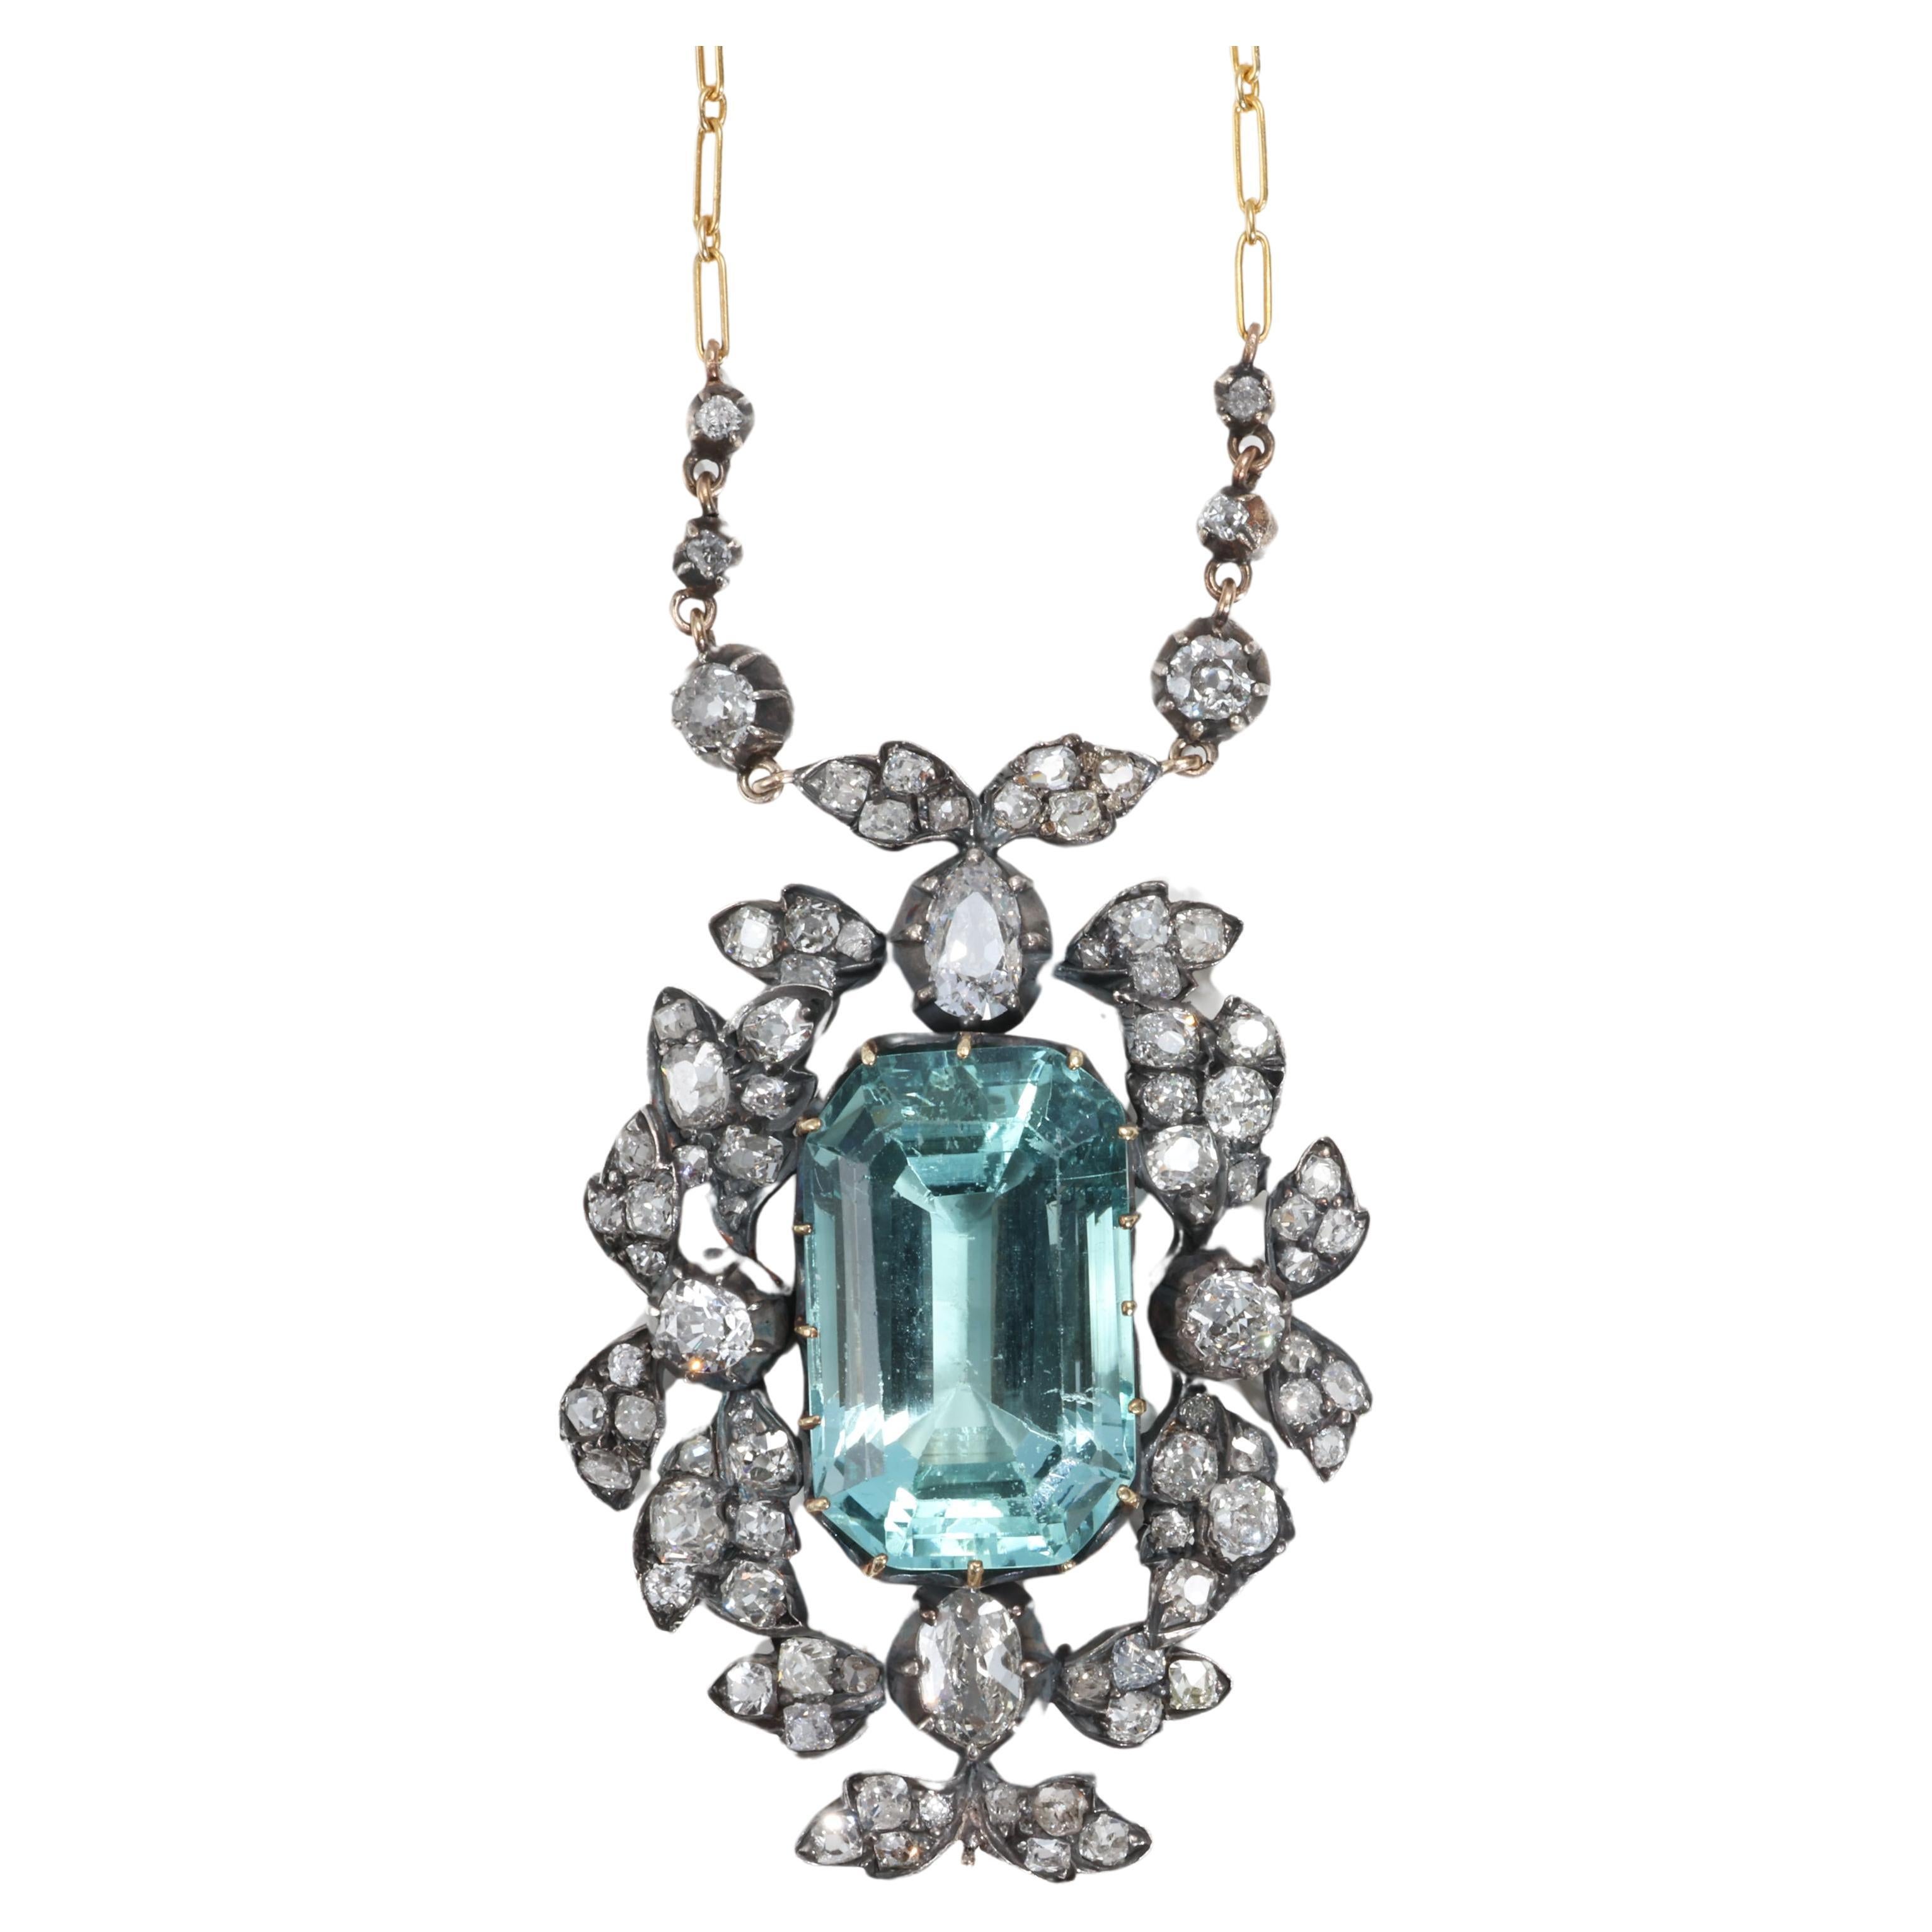 Aquamarine & Diamond Pendant "Bridgerton Period" Regency Era Circa 1811 For Sale